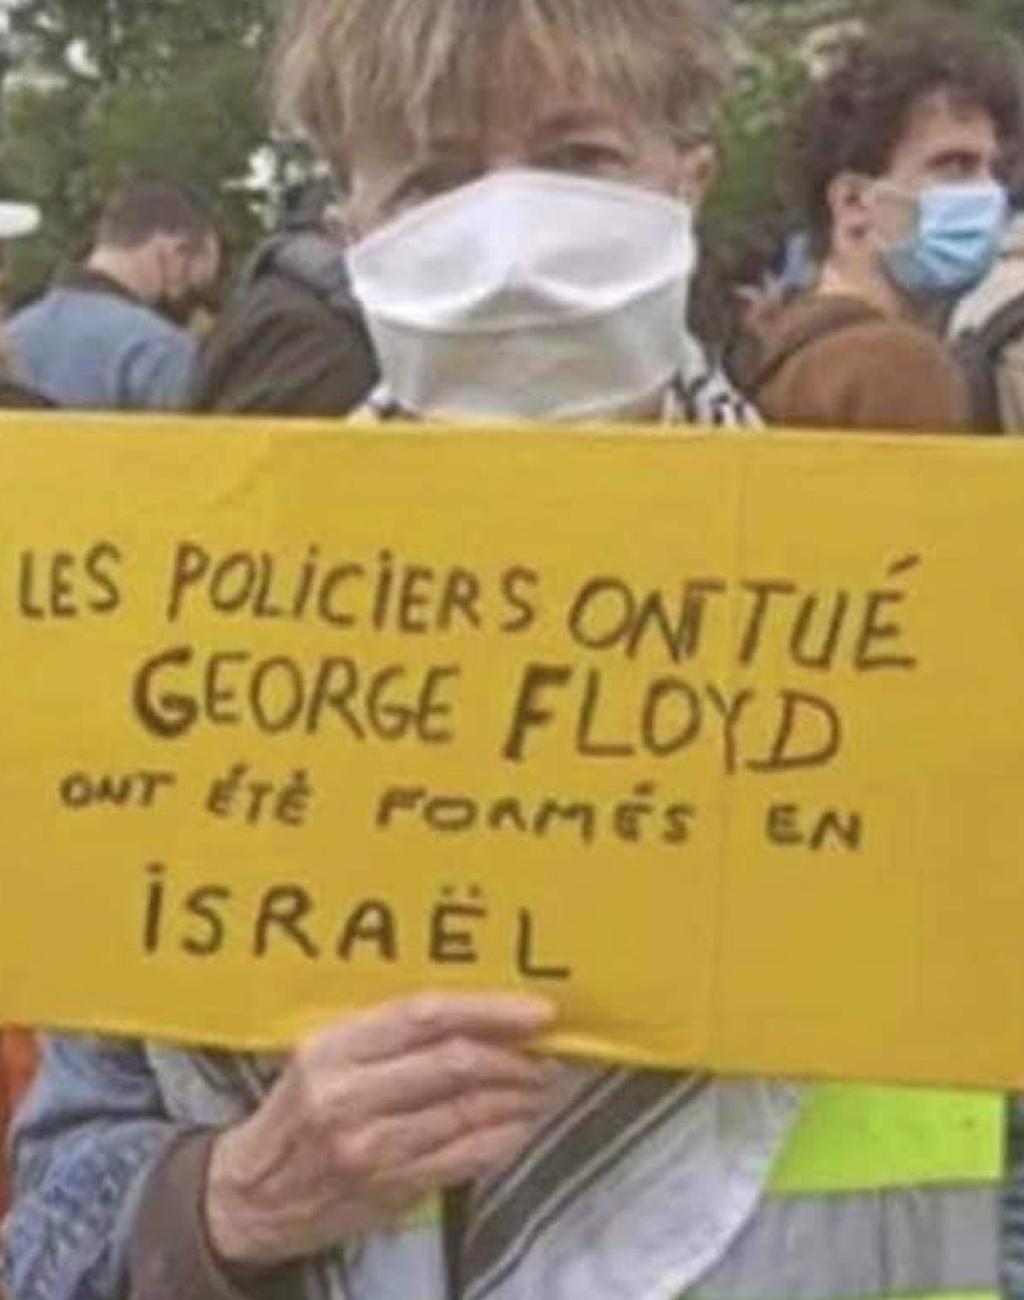  "Полицейские, убившие Флойда, обучались в Израиле", - гласит надпись на плакате